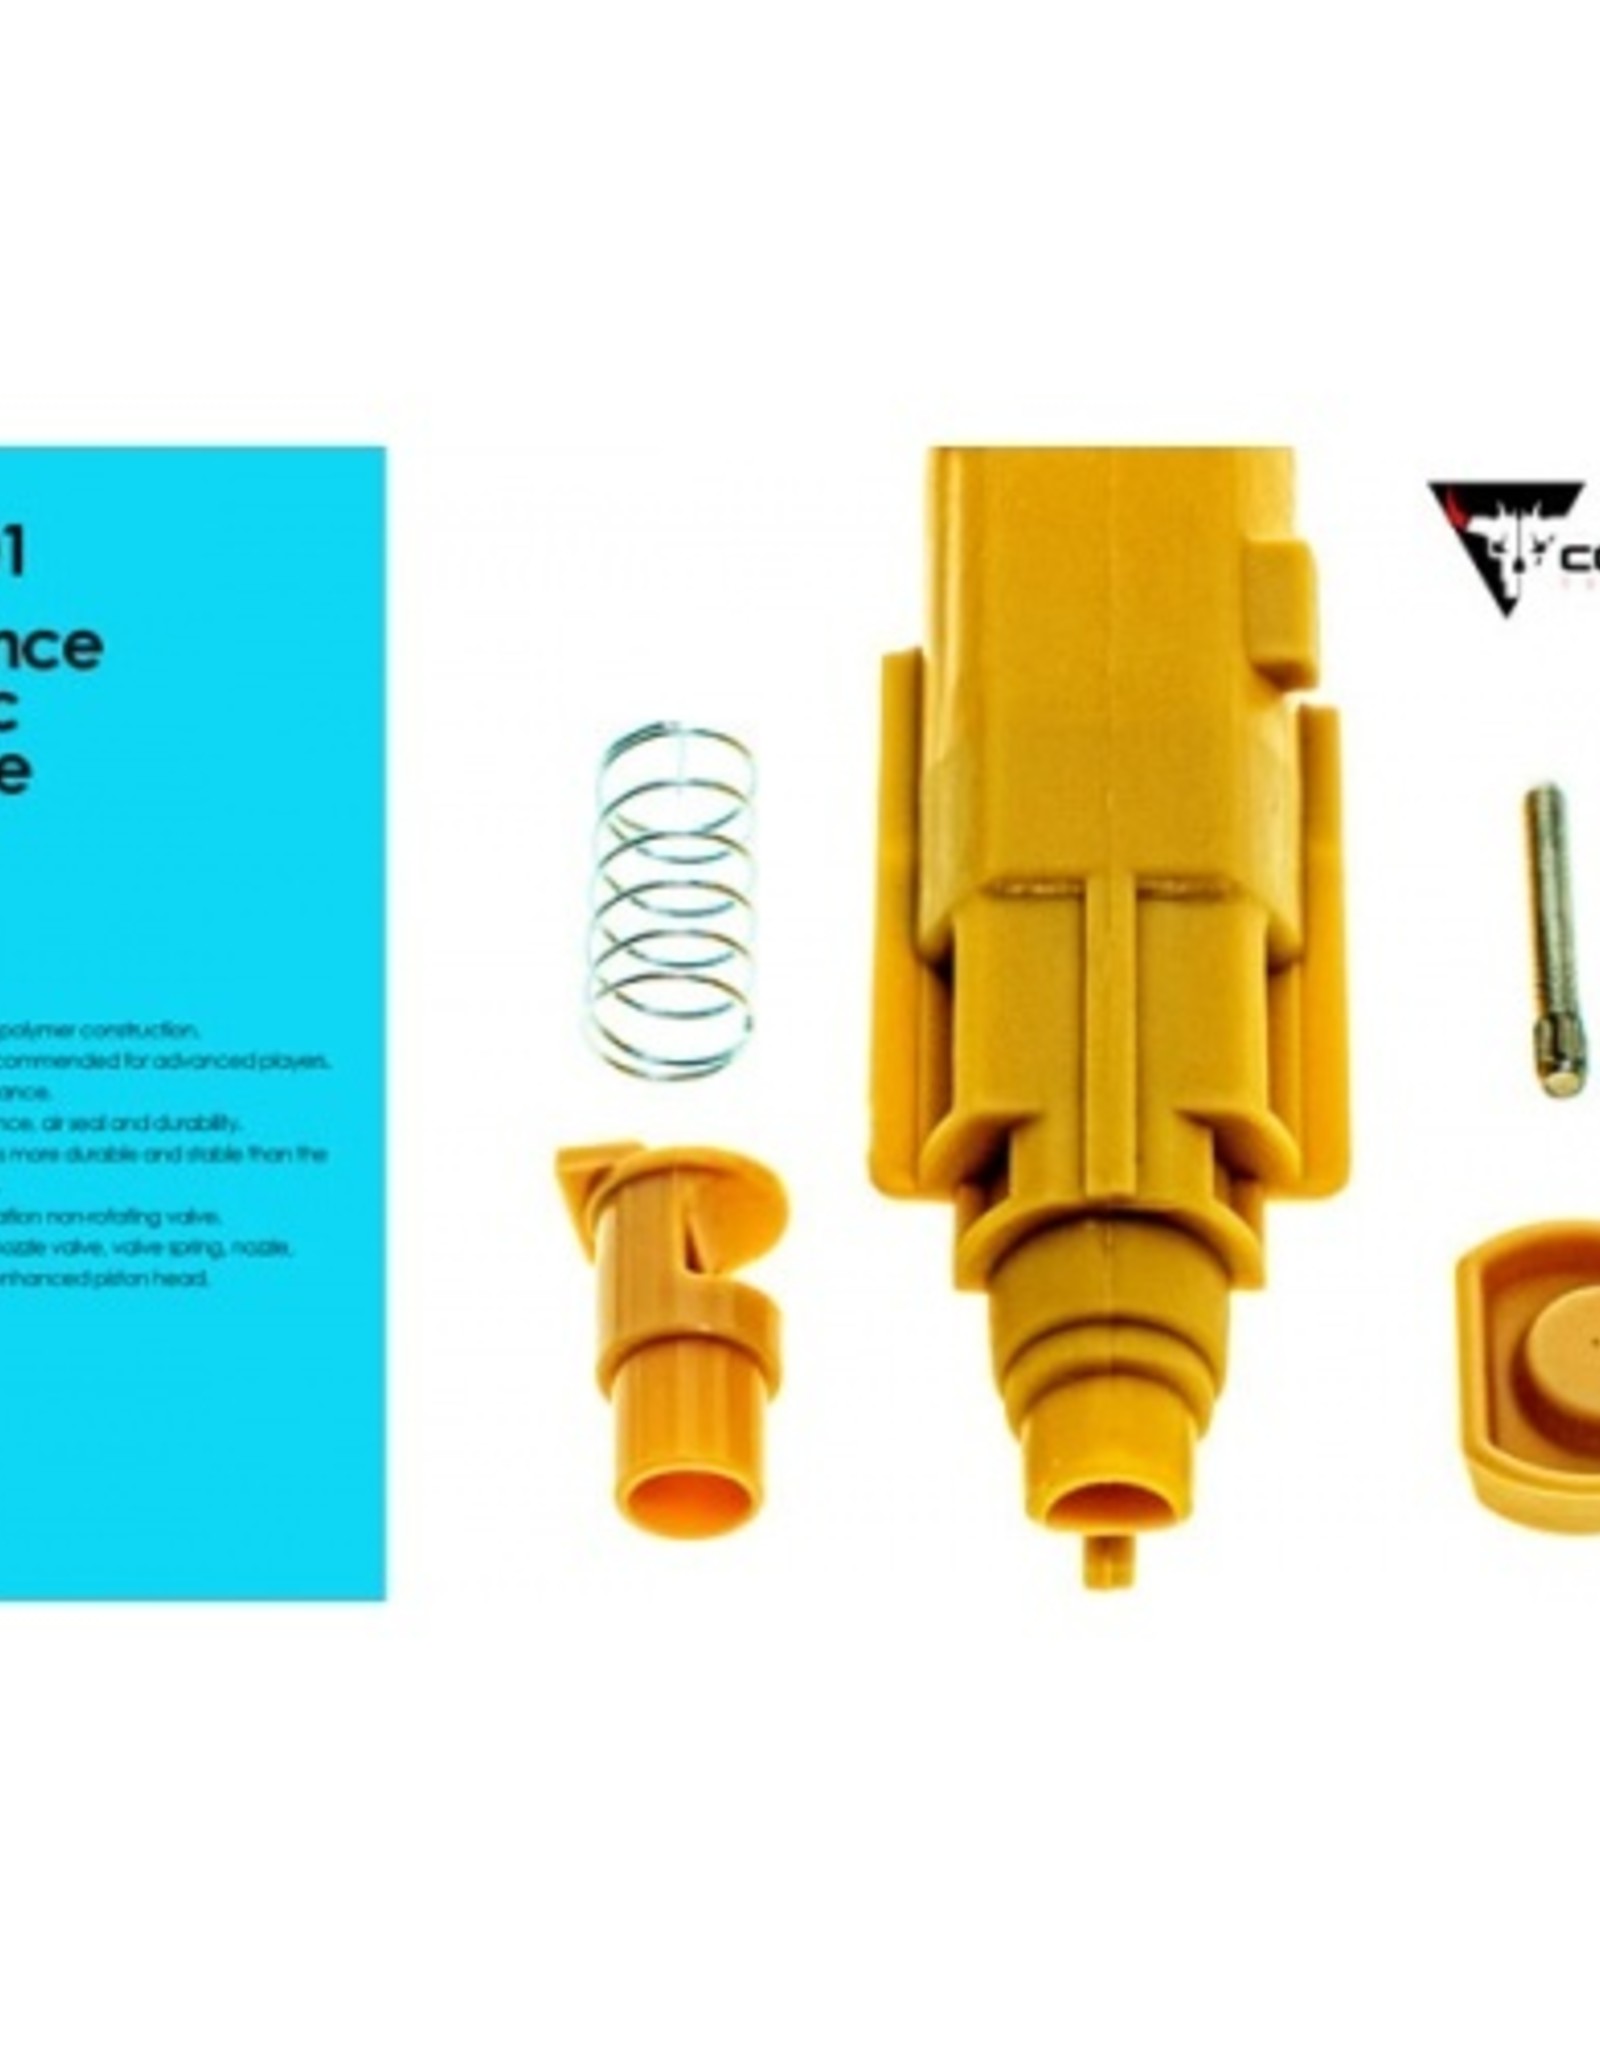 COWCOW AAP01 Enhance Plastic Nozzle Set